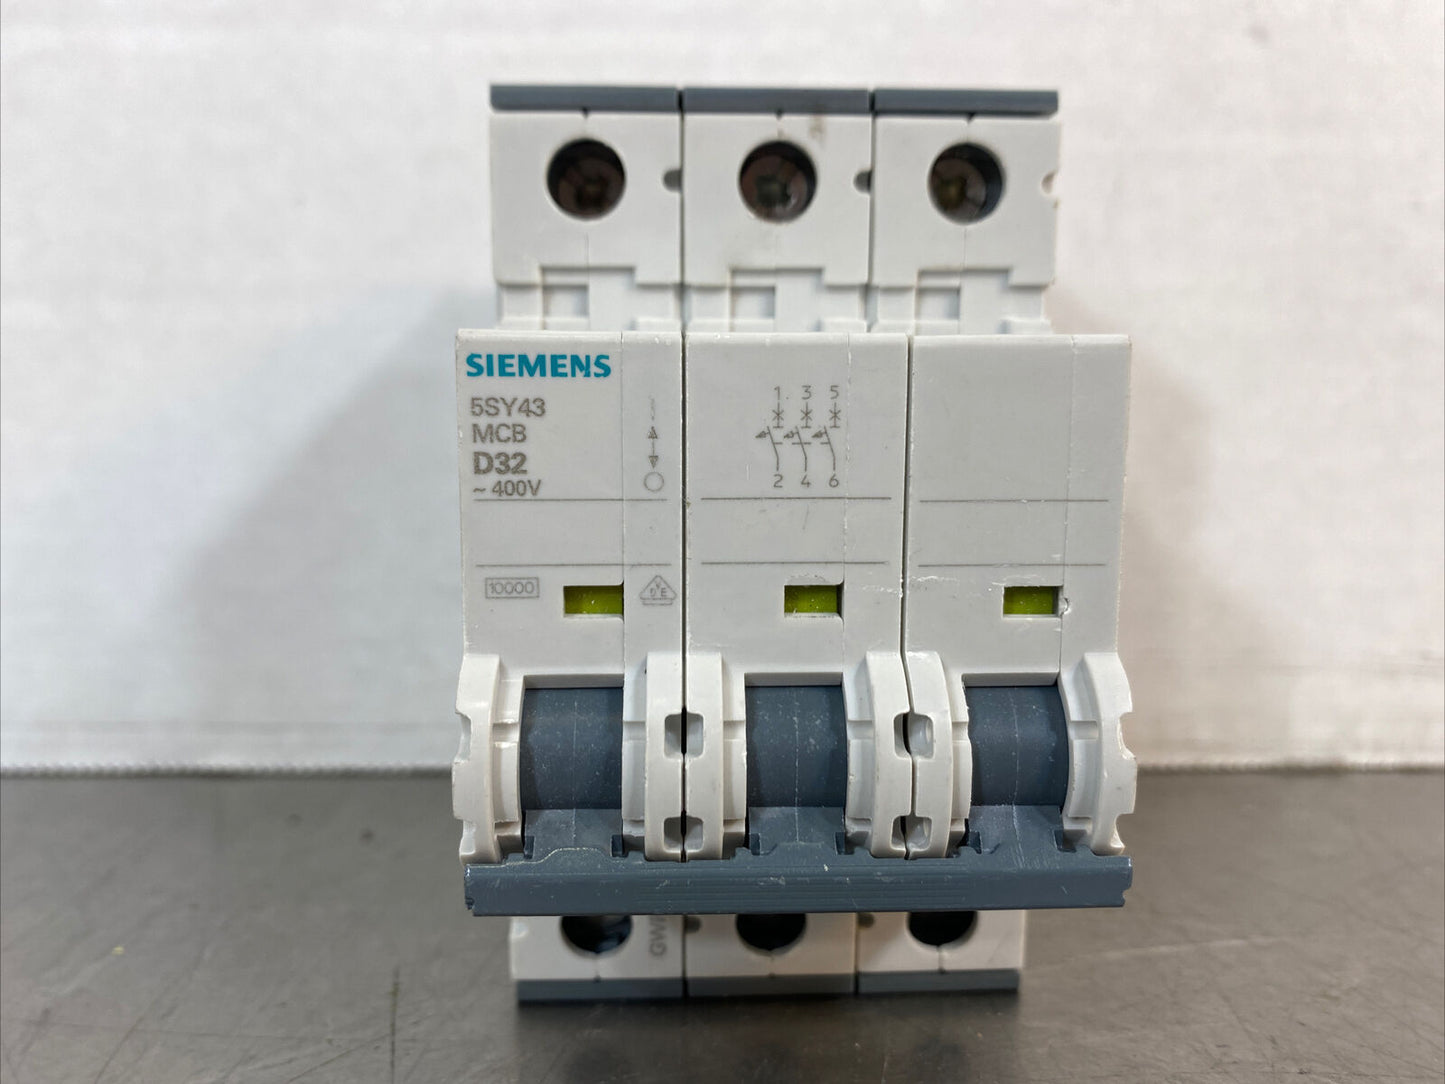 Siemens 5SY4332-8 Circuit Breaker 5SY43-MCB-D32, -400V.   4D